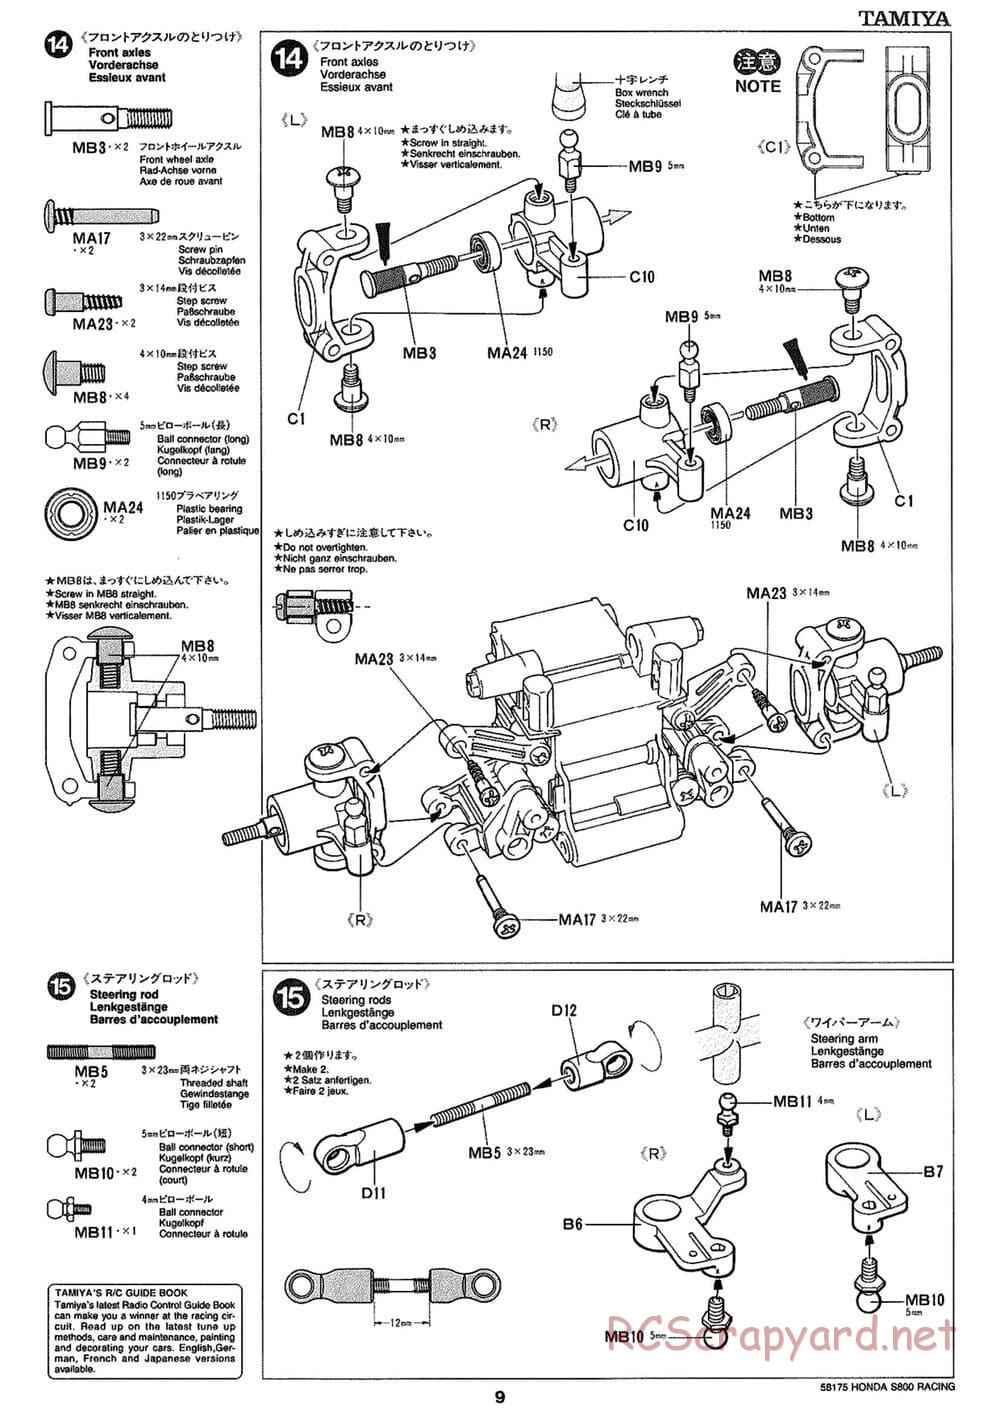 Tamiya - Honda S800 Racing - M02 Chassis - Manual - Page 9